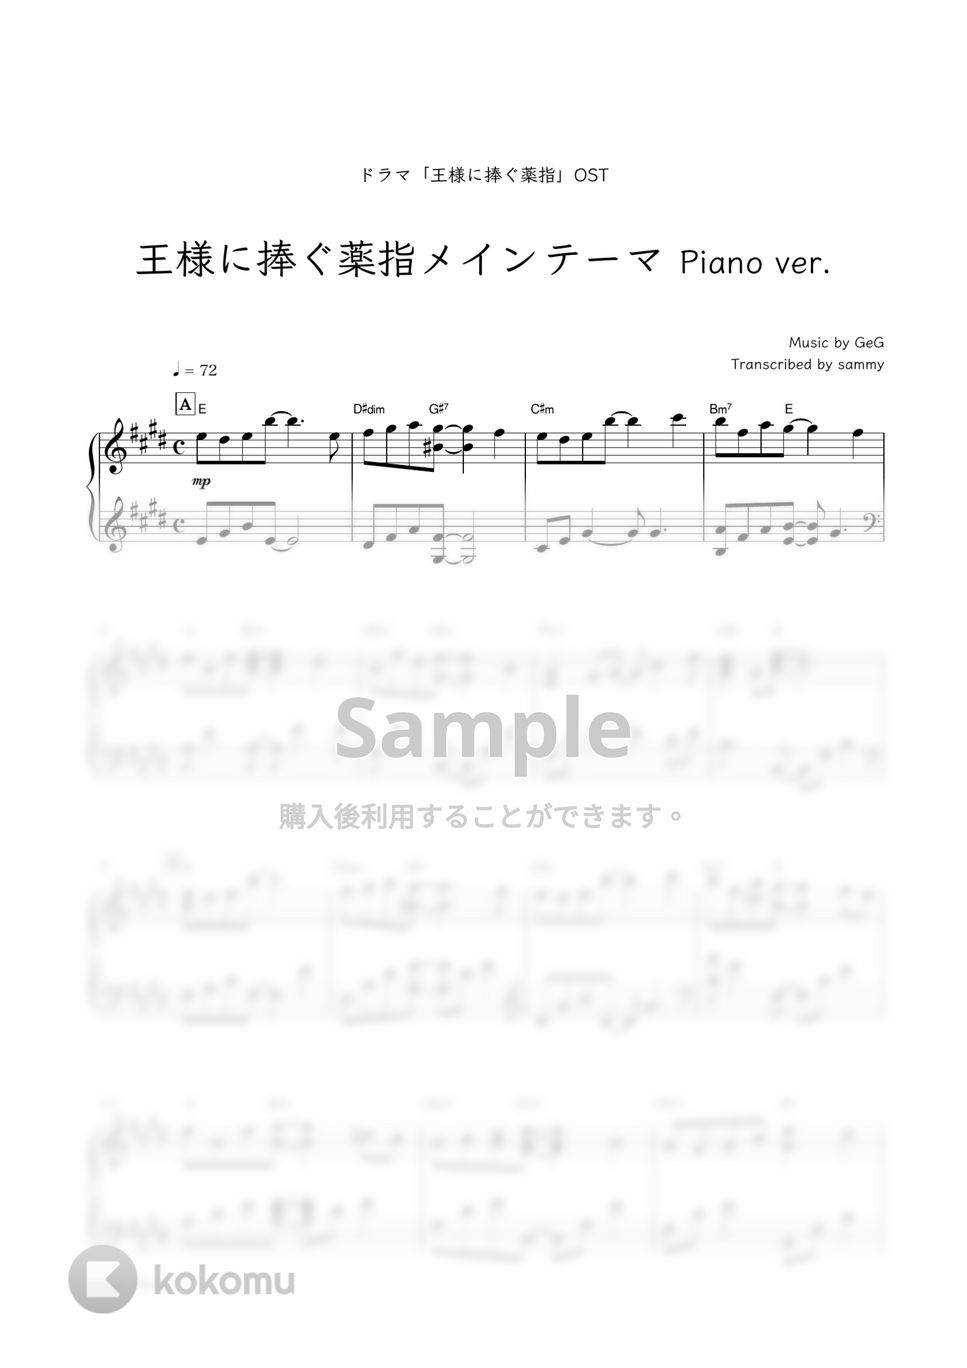 ドラマ『王様に捧ぐ薬指』OST - 王様に捧ぐ薬指 メインテーマ Piano ver. by sammy